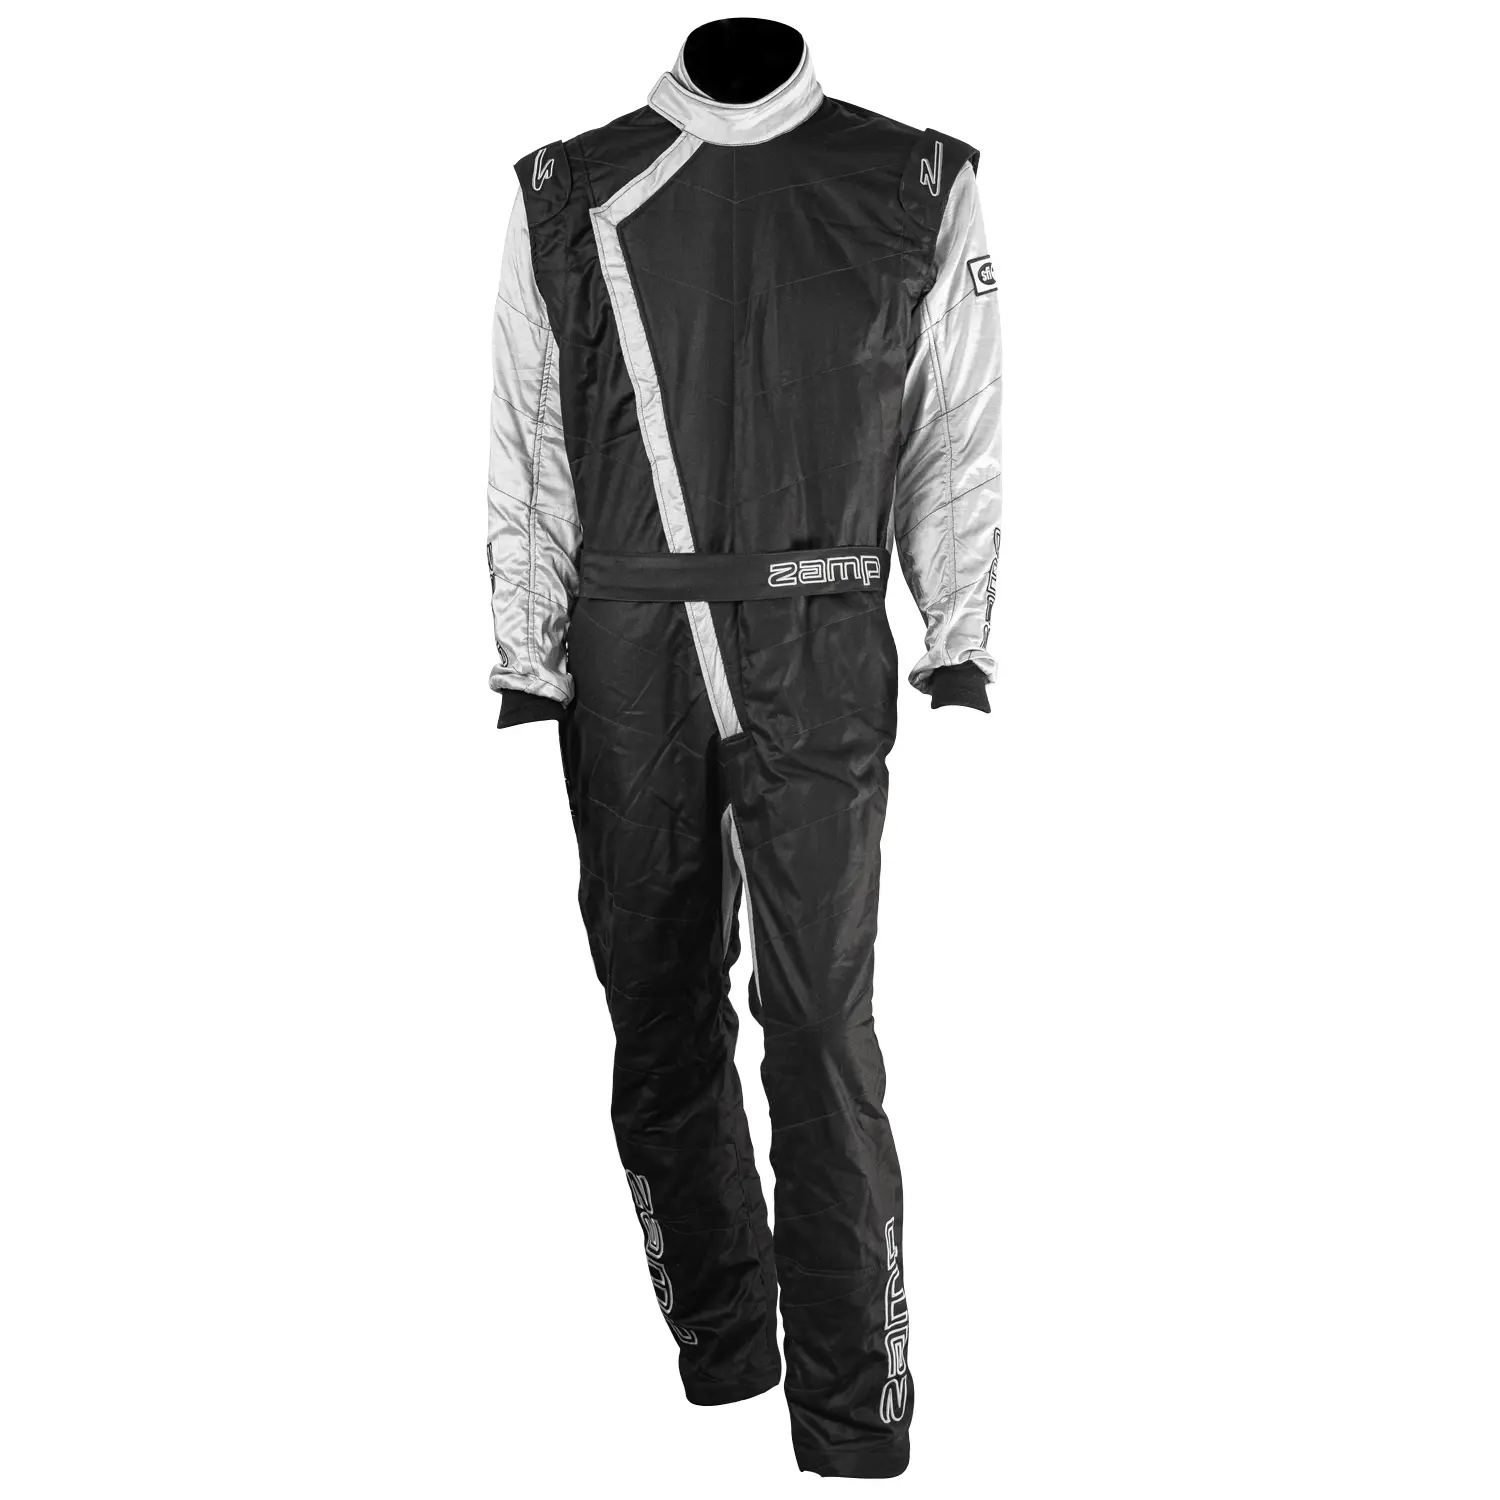 ZR-40 Race Youth Suit